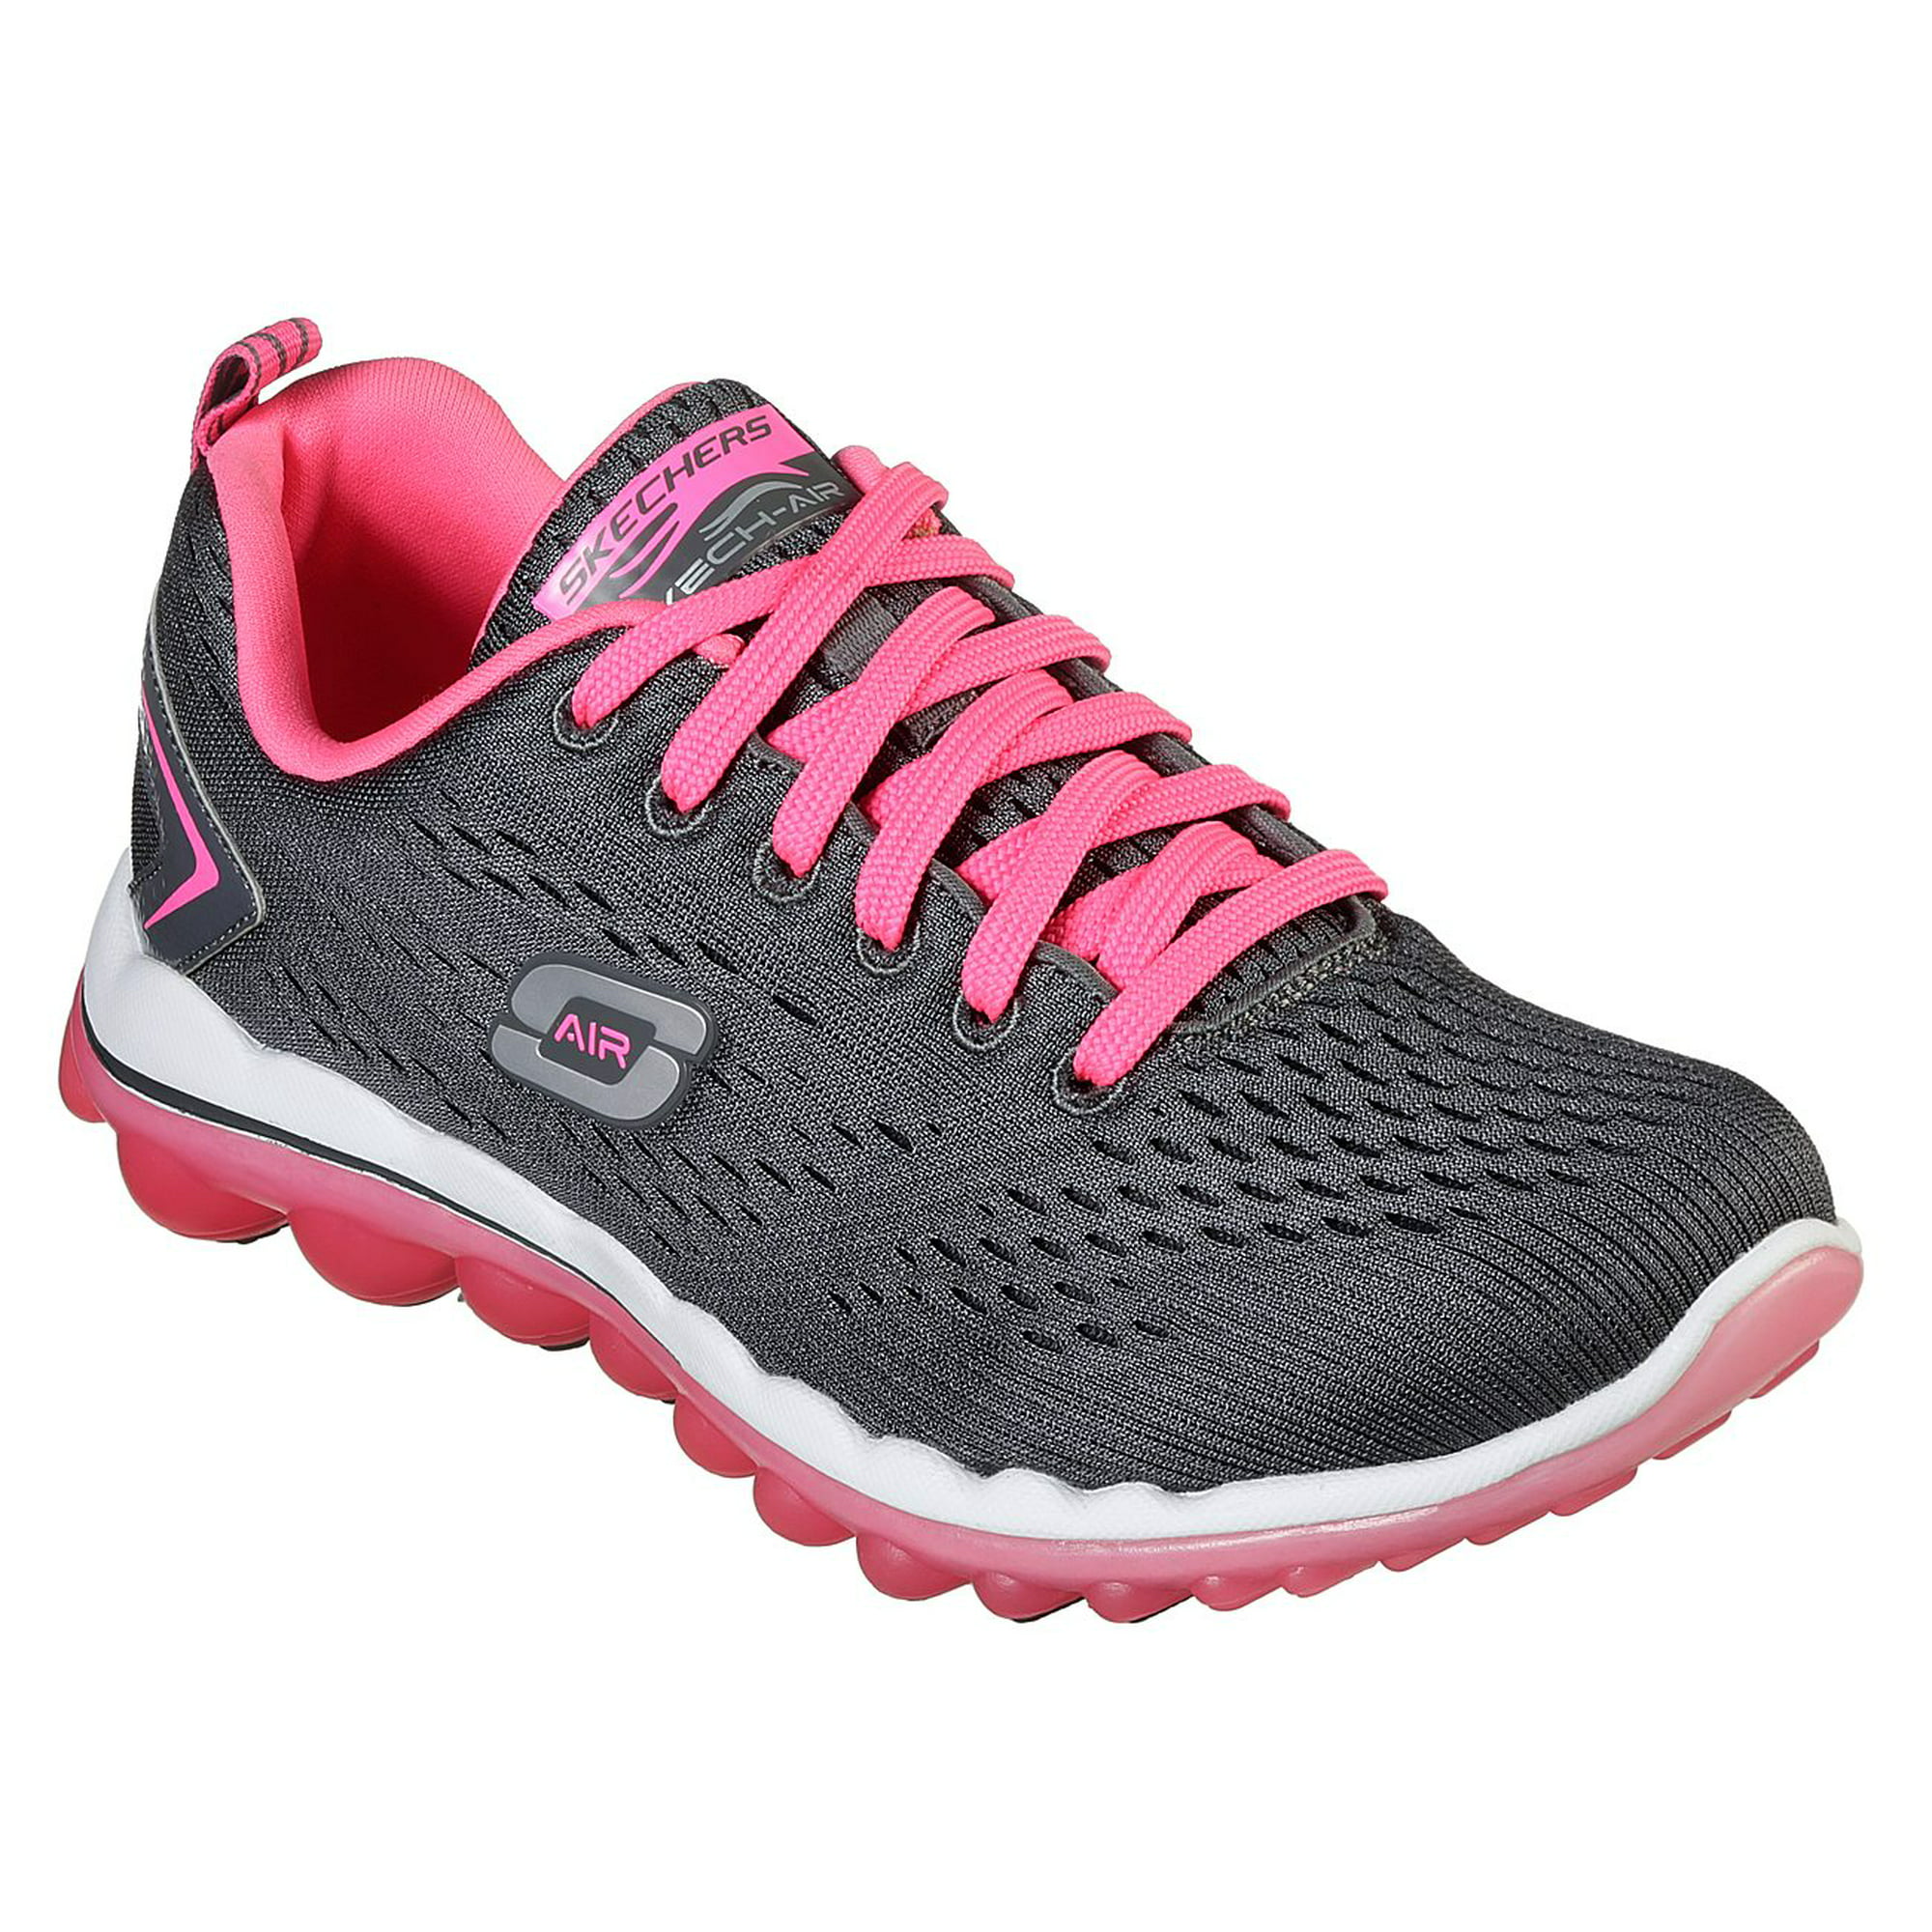 Skechers Sport Women's Skech Run Fashion Sneaker, Charcoal Pink, 5.5 M US -